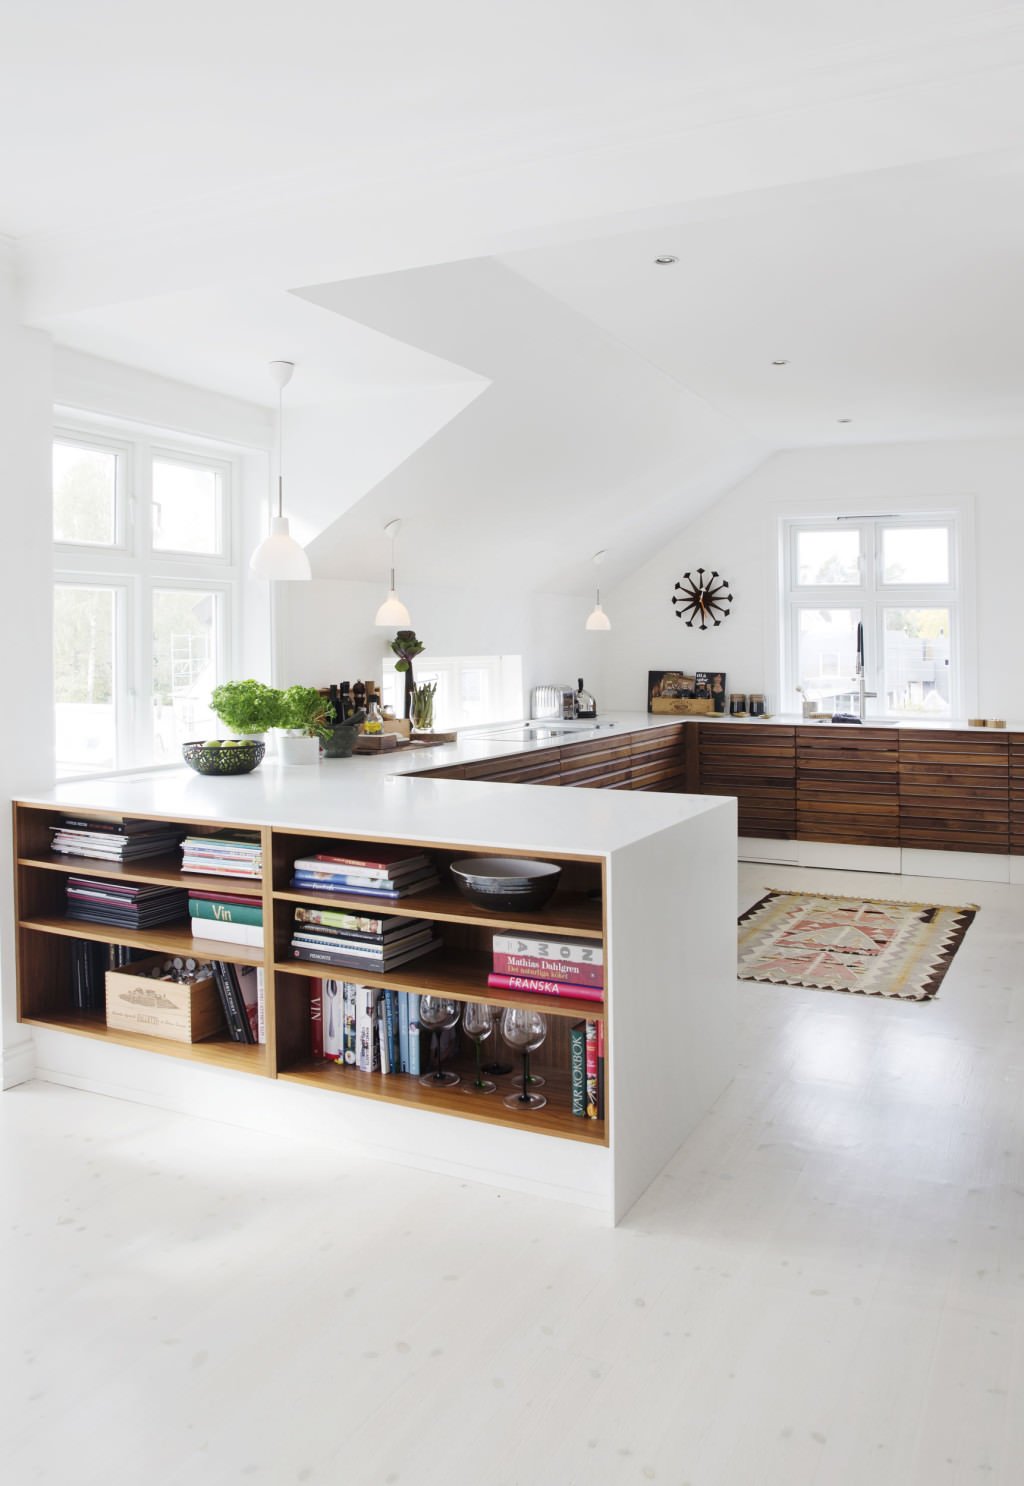 Stupenda idea di cucina moderna open space con mobili bassi in legno e bianco. In uno dei mobili è stata inserita una piccola libreria. Elegante, raffinato e funzionale.